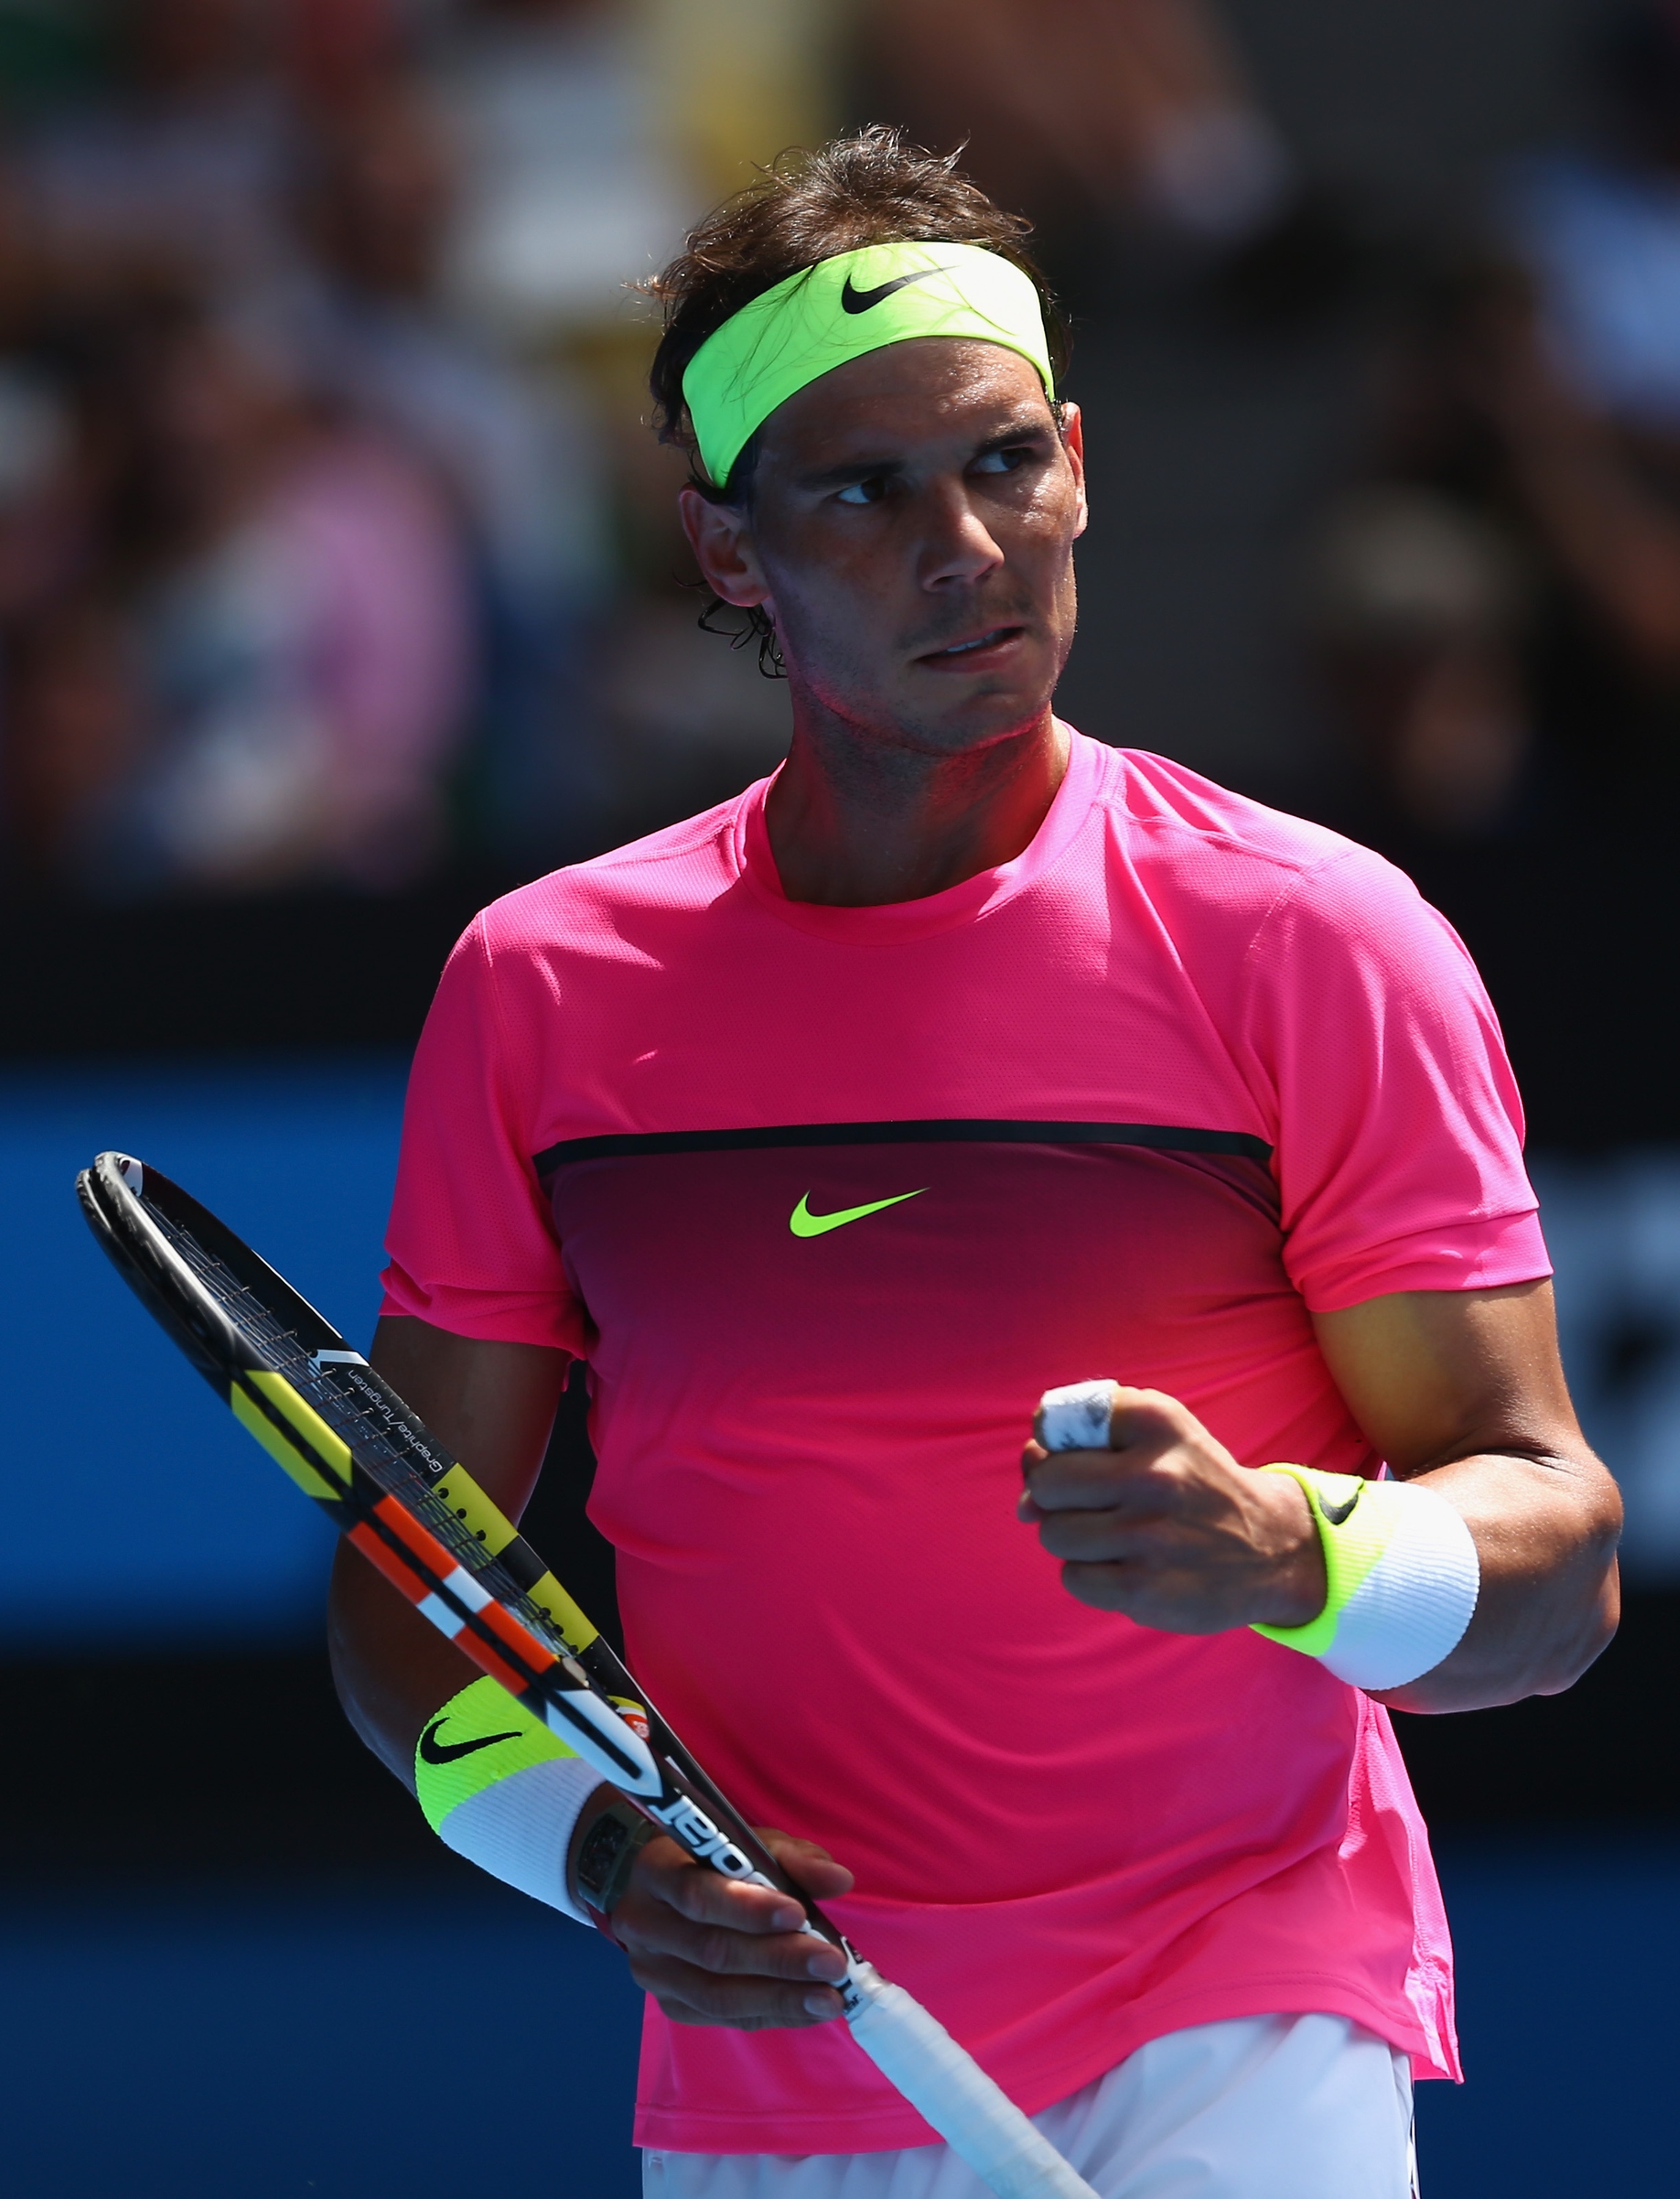 Rafael Nadal vs Mikhail Youzhny Open de Australia 2015 Pict. 3